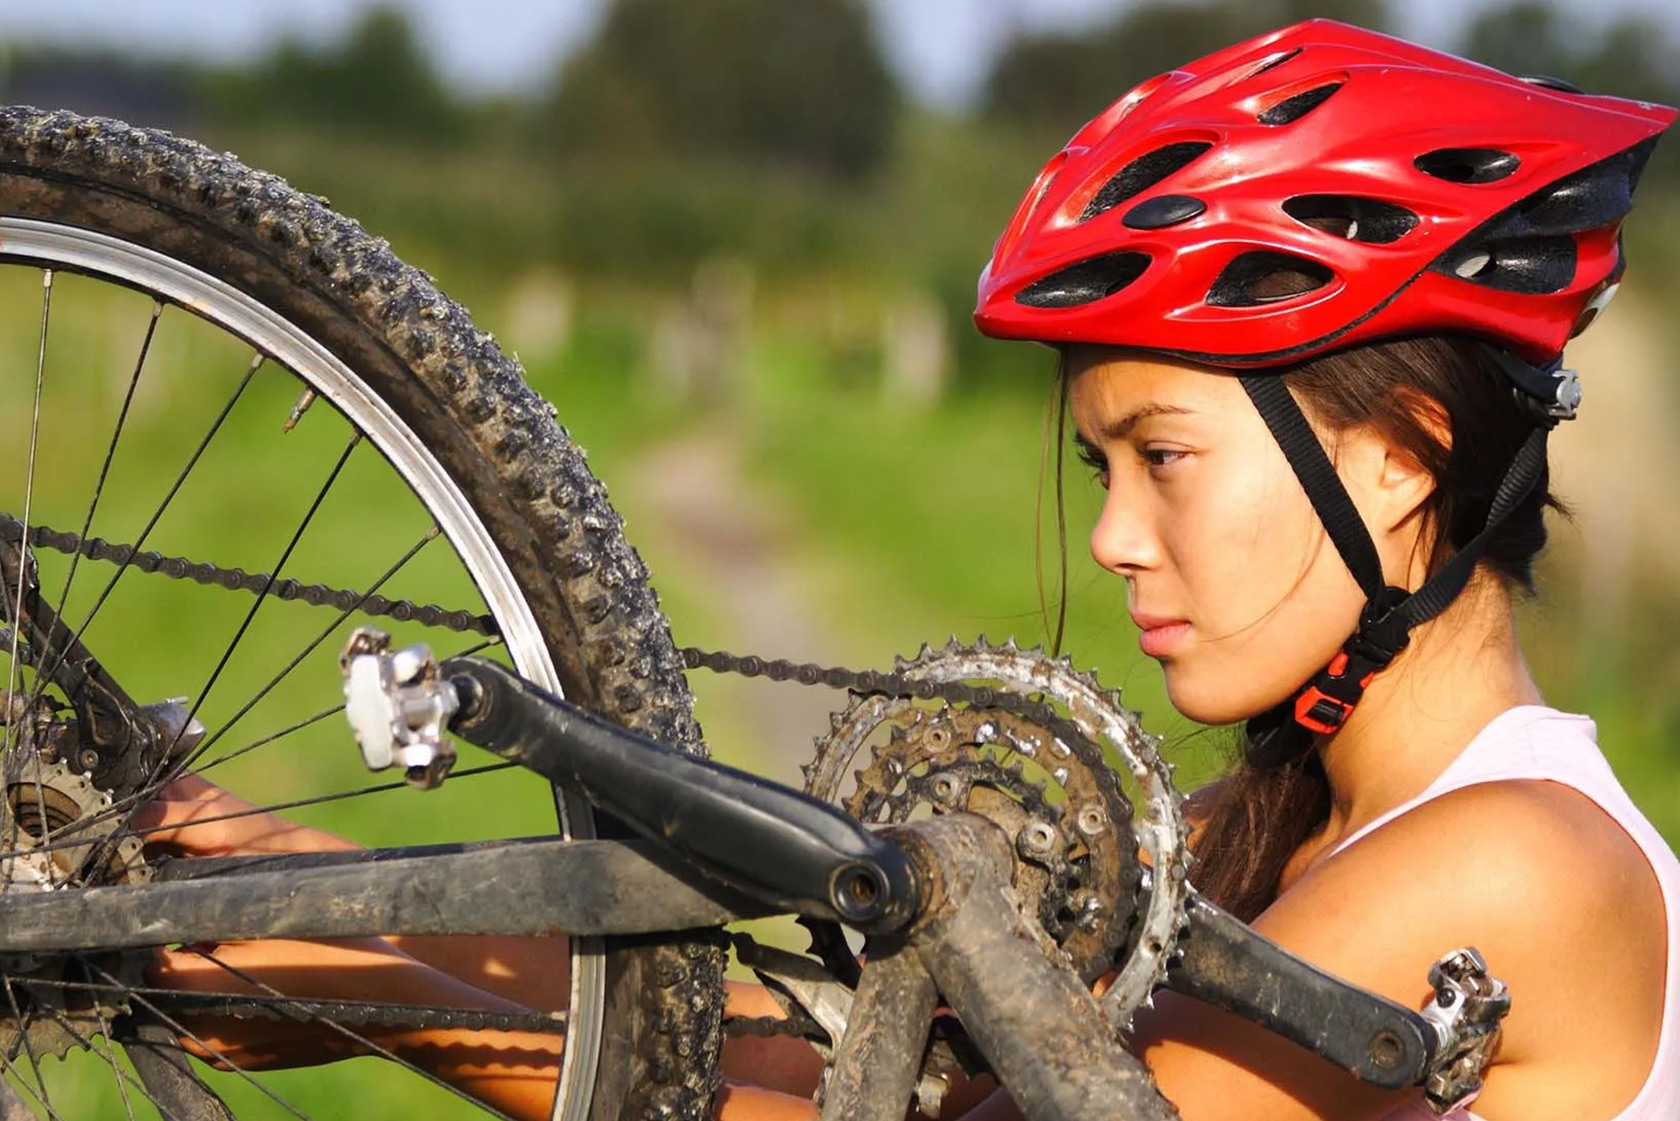 Accessori per biciclette: così la vostra bicicletta sarà sempre  equipaggiata al top per ogni occasione